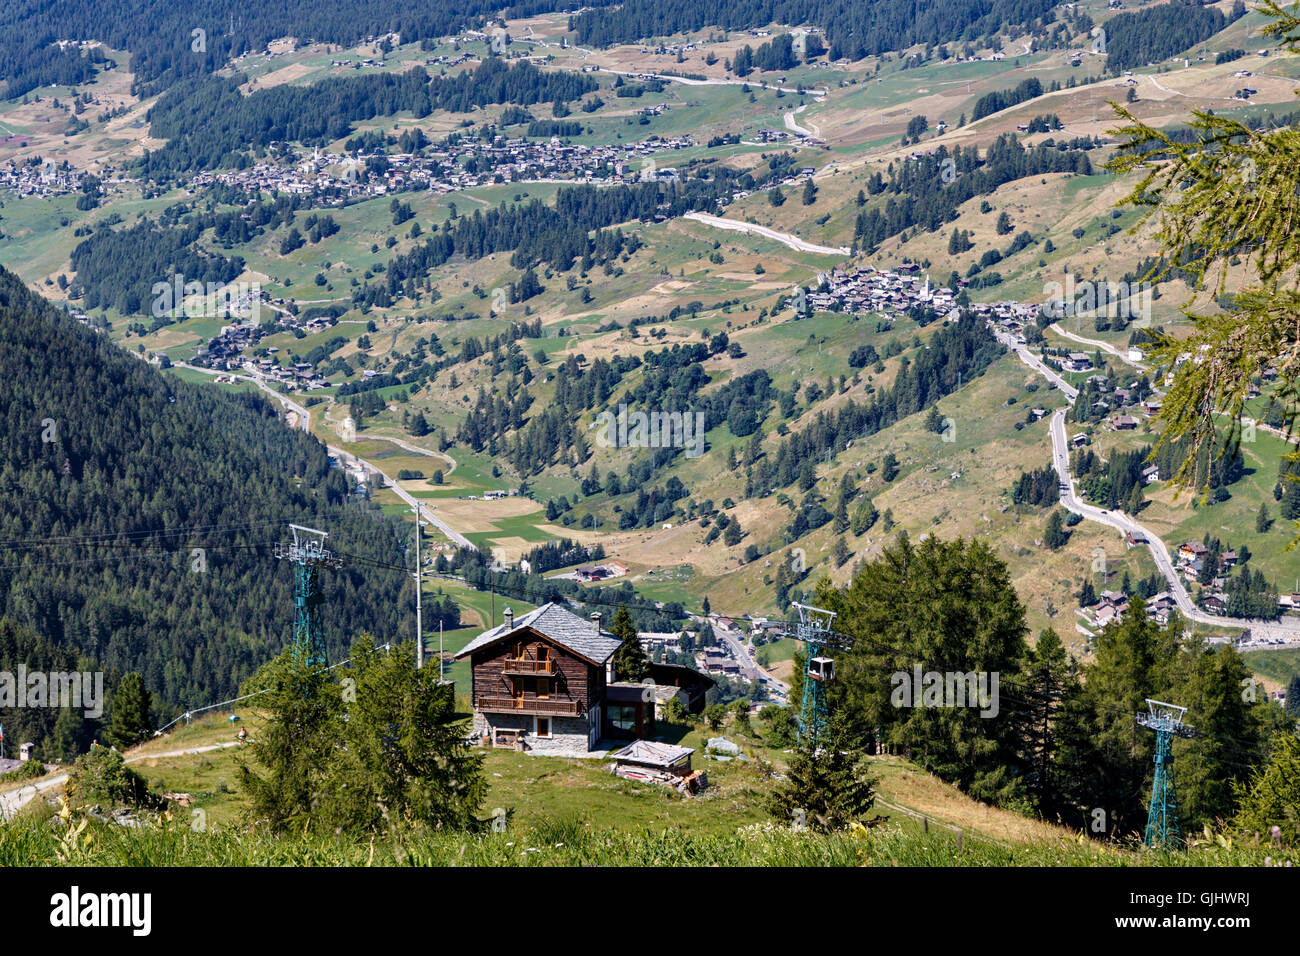 Vue aérienne de villages alpins dans une vallée boisée à Champoluc, dans le nord de l'Italie Banque D'Images